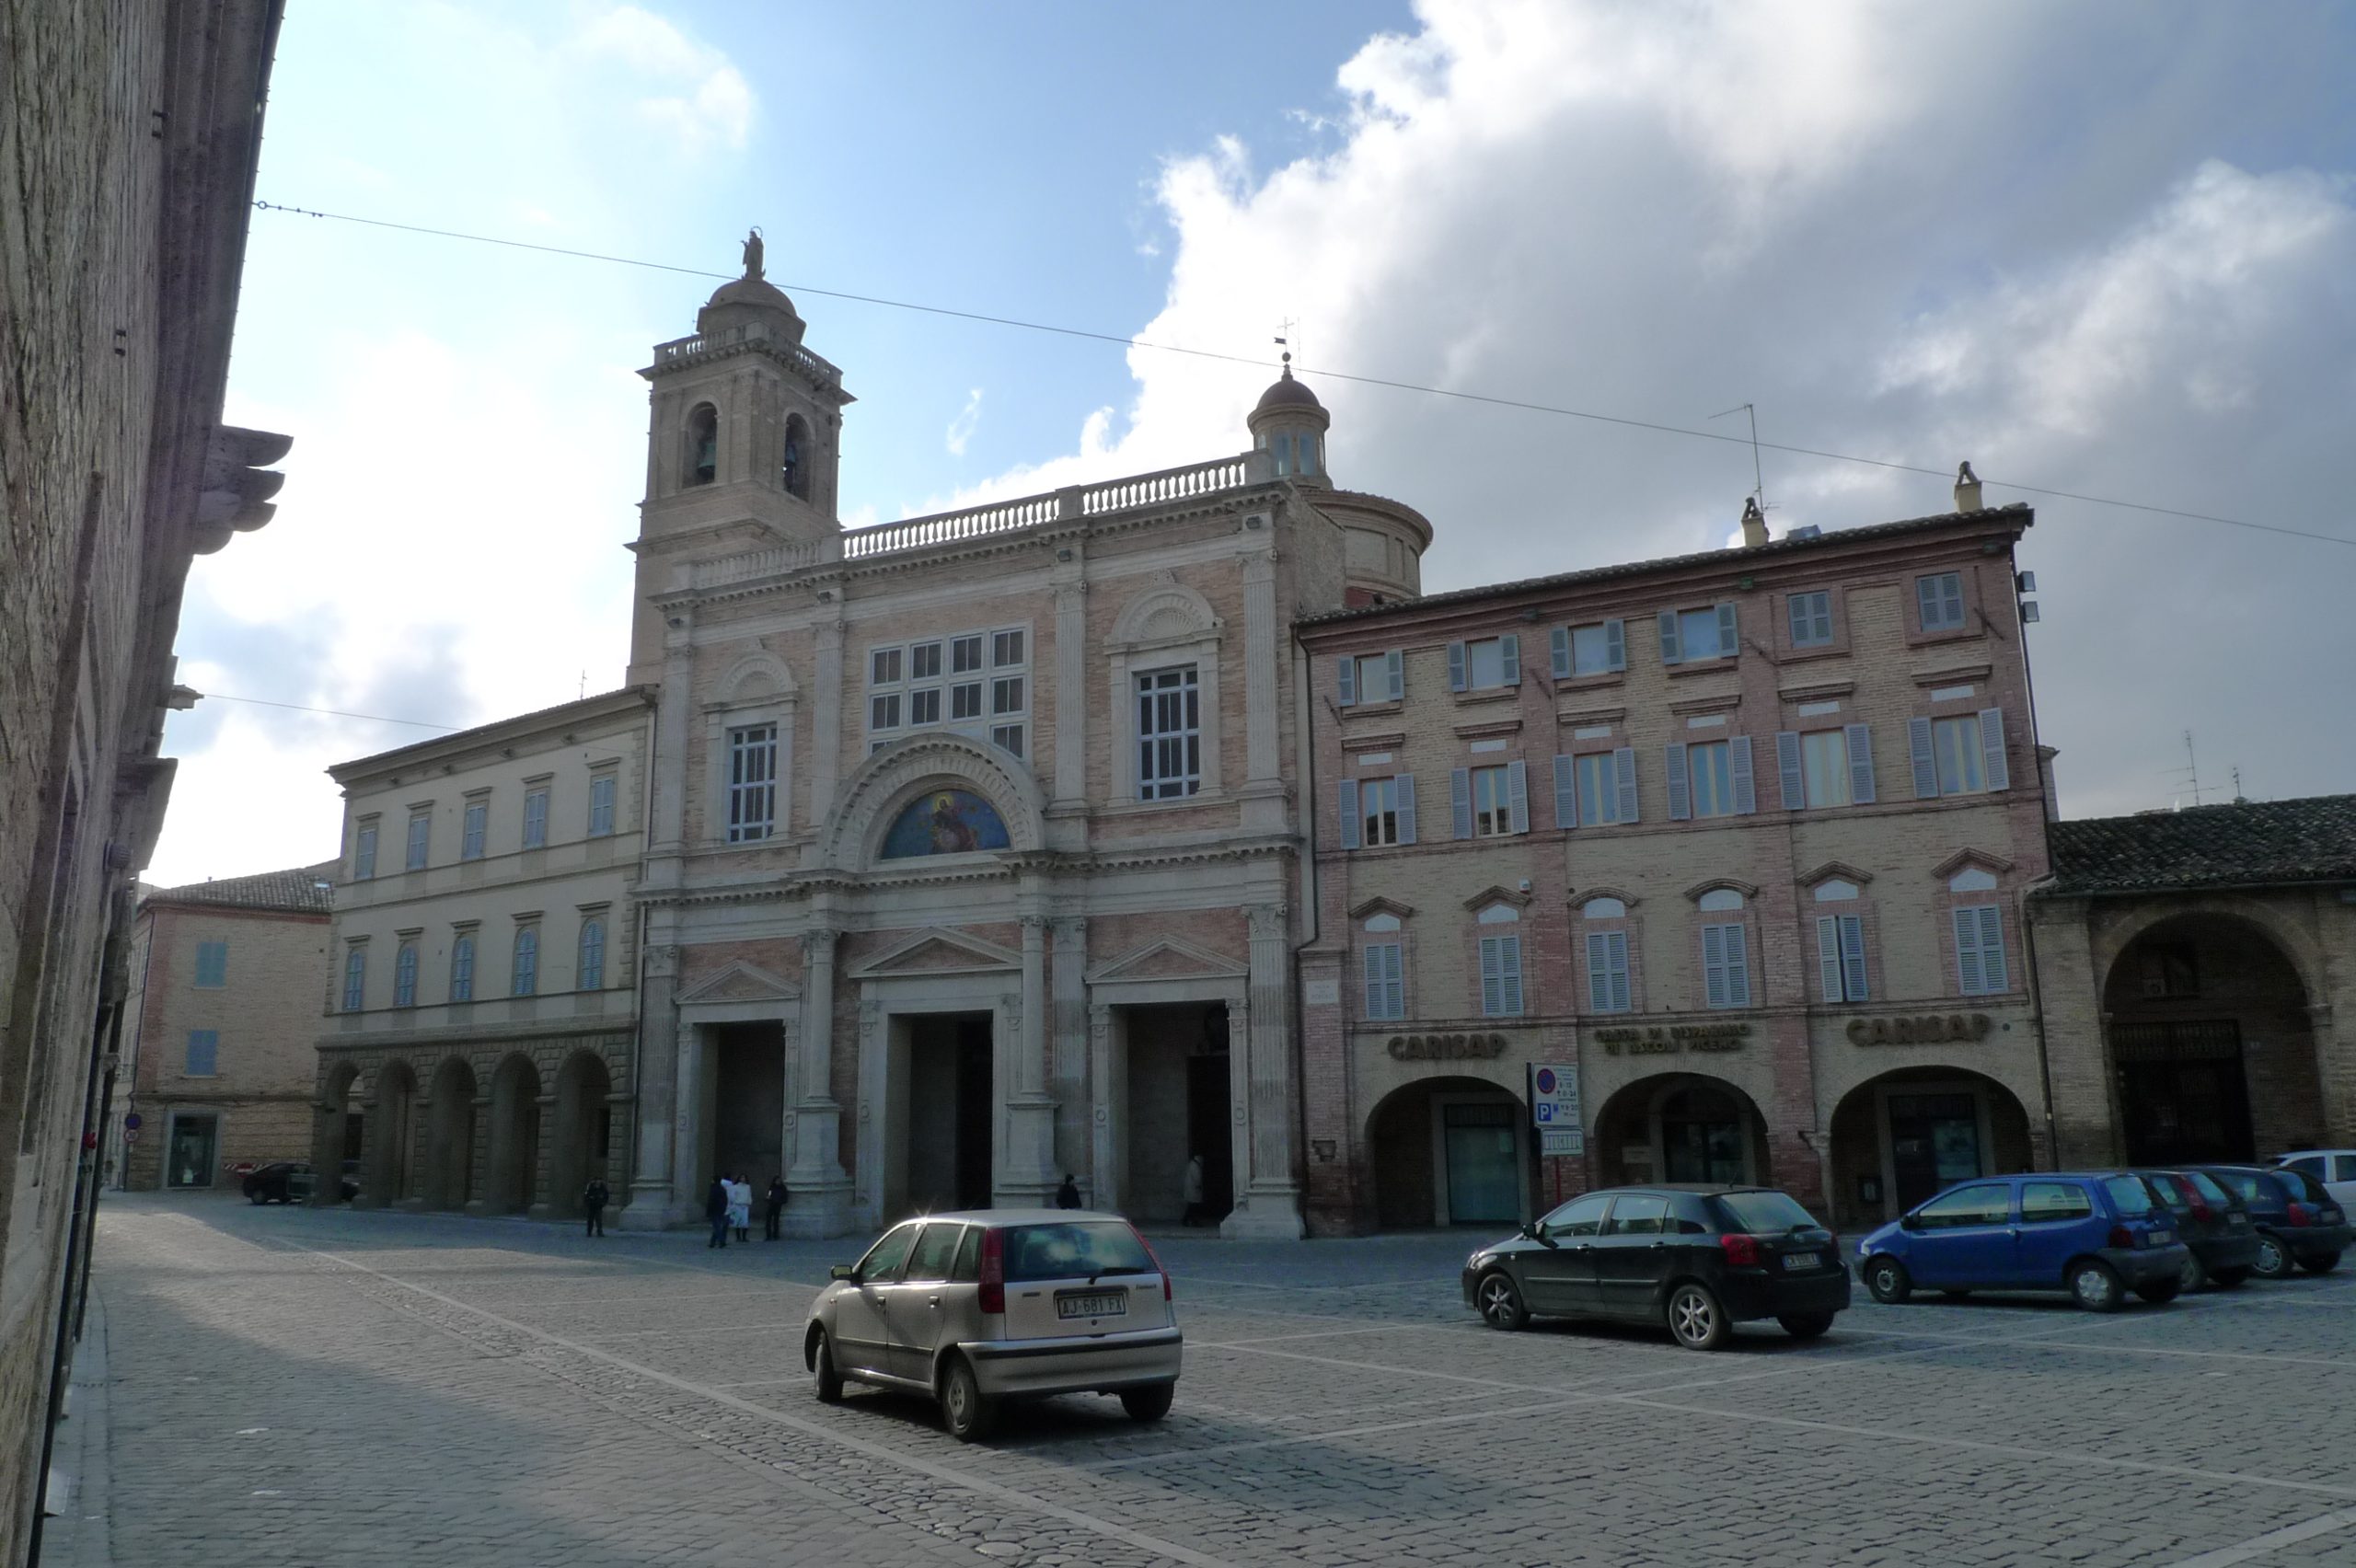 Ricostruzione post sisma, oltre un milione di euro per 17 chiese del Piceno